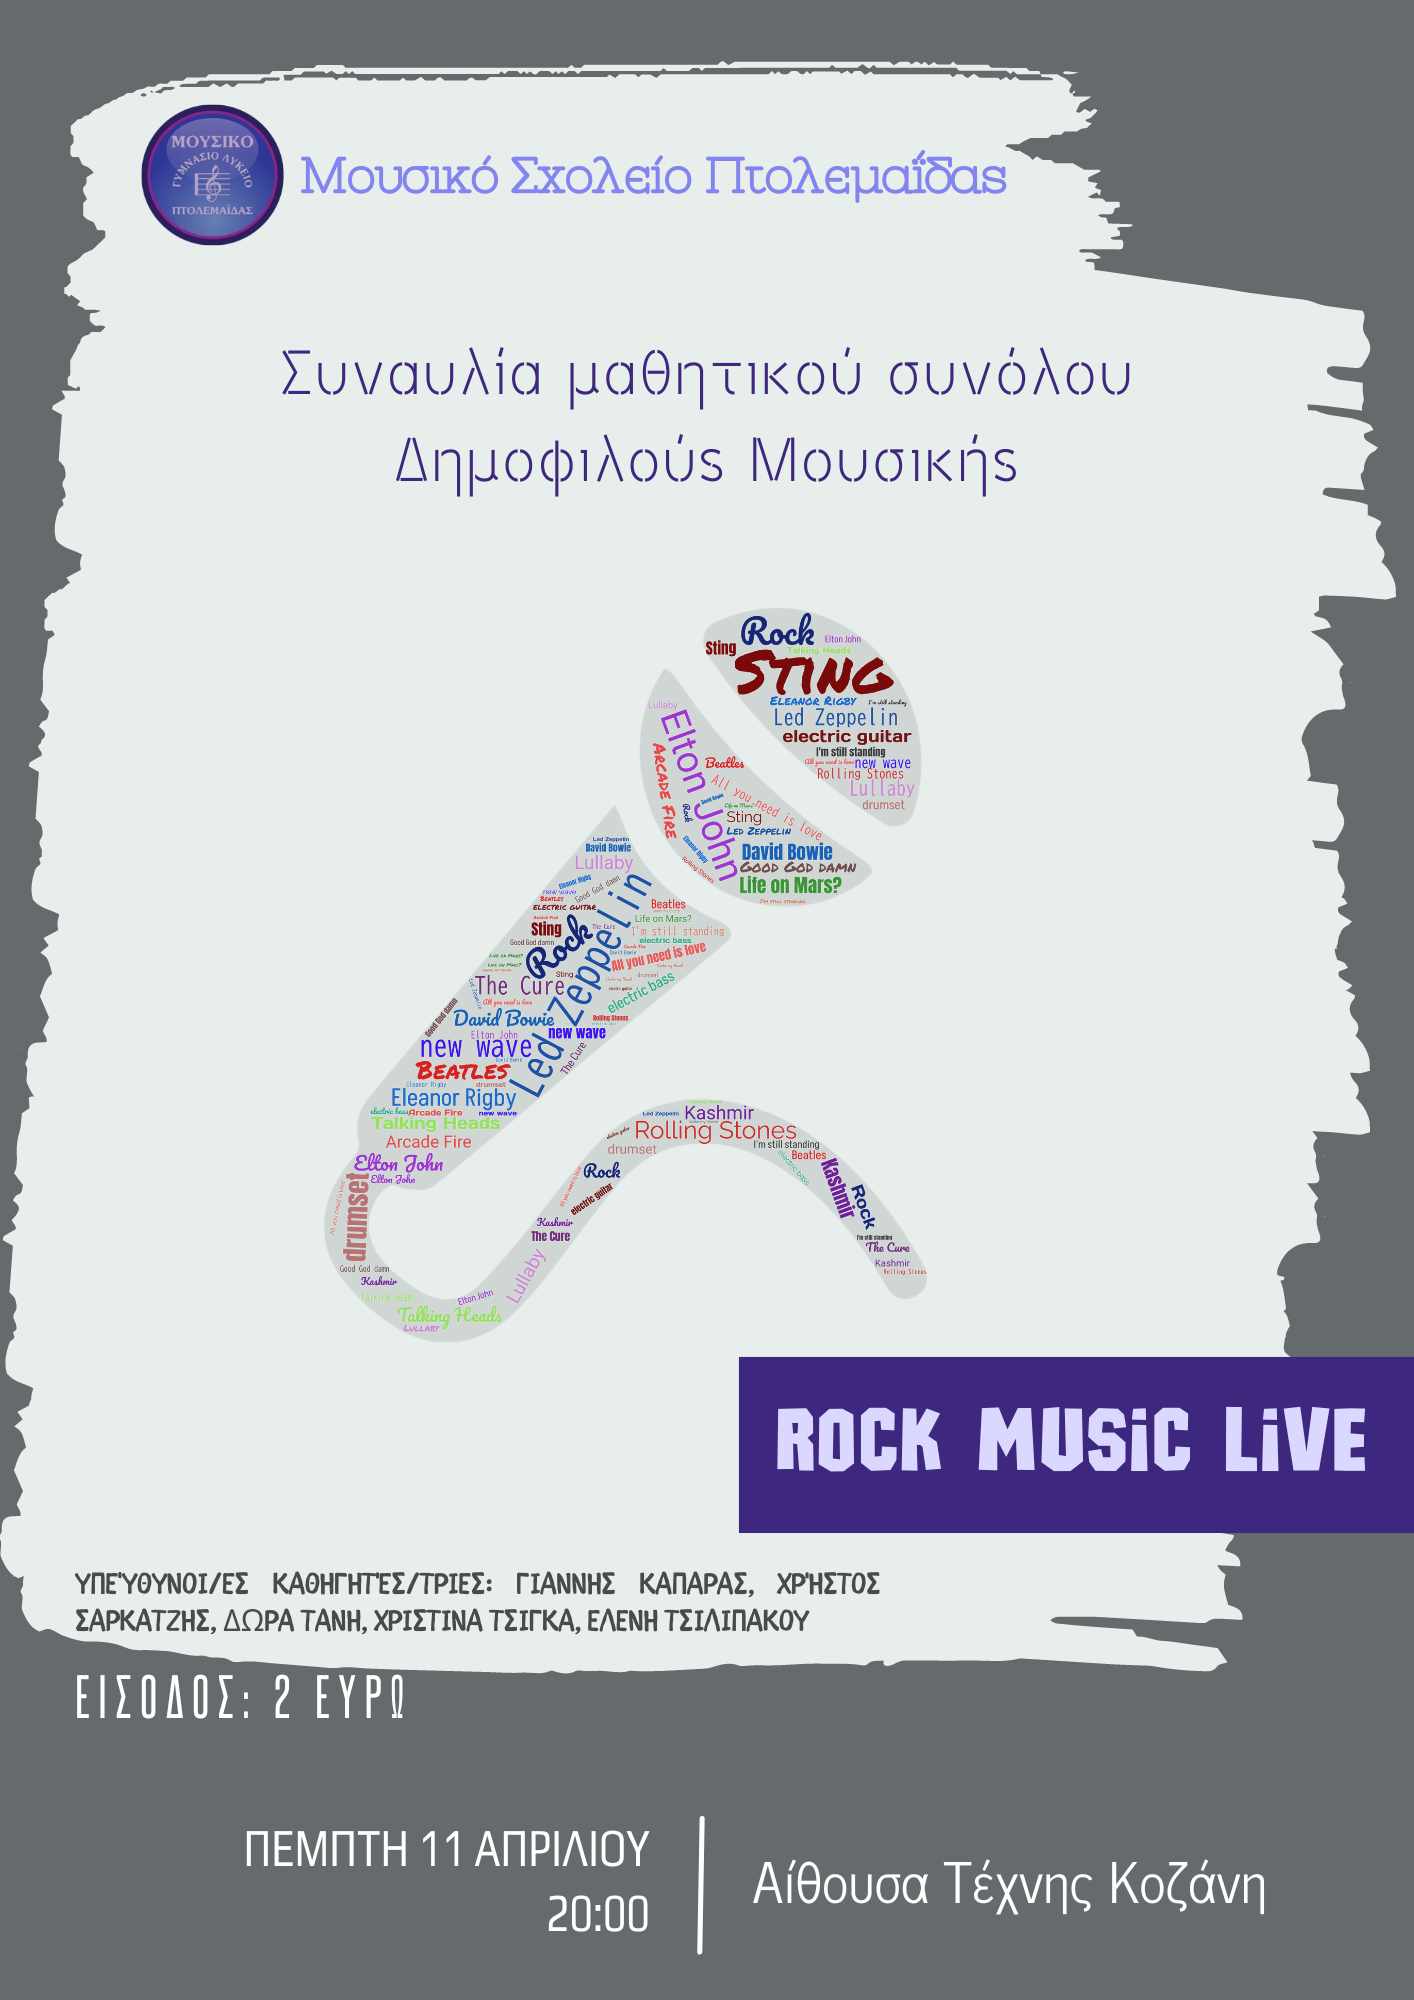 Το Μουσικό Σχολείο Πτολεμαΐδας εγκαινιάζει μια σειρά επτά συναυλιών που ξεκινούν μεθαύριο Πέμπτη 11 Απριλίου και ολοκληρώνονται την Κυριακή 19 Μαΐου. Αρχίζουμε με τη συναυλία του συνόλου ροκ μουσικής στην Αίθουσα Τέχνης της Κοζάνης, στις 20.00. Σας περιμέ